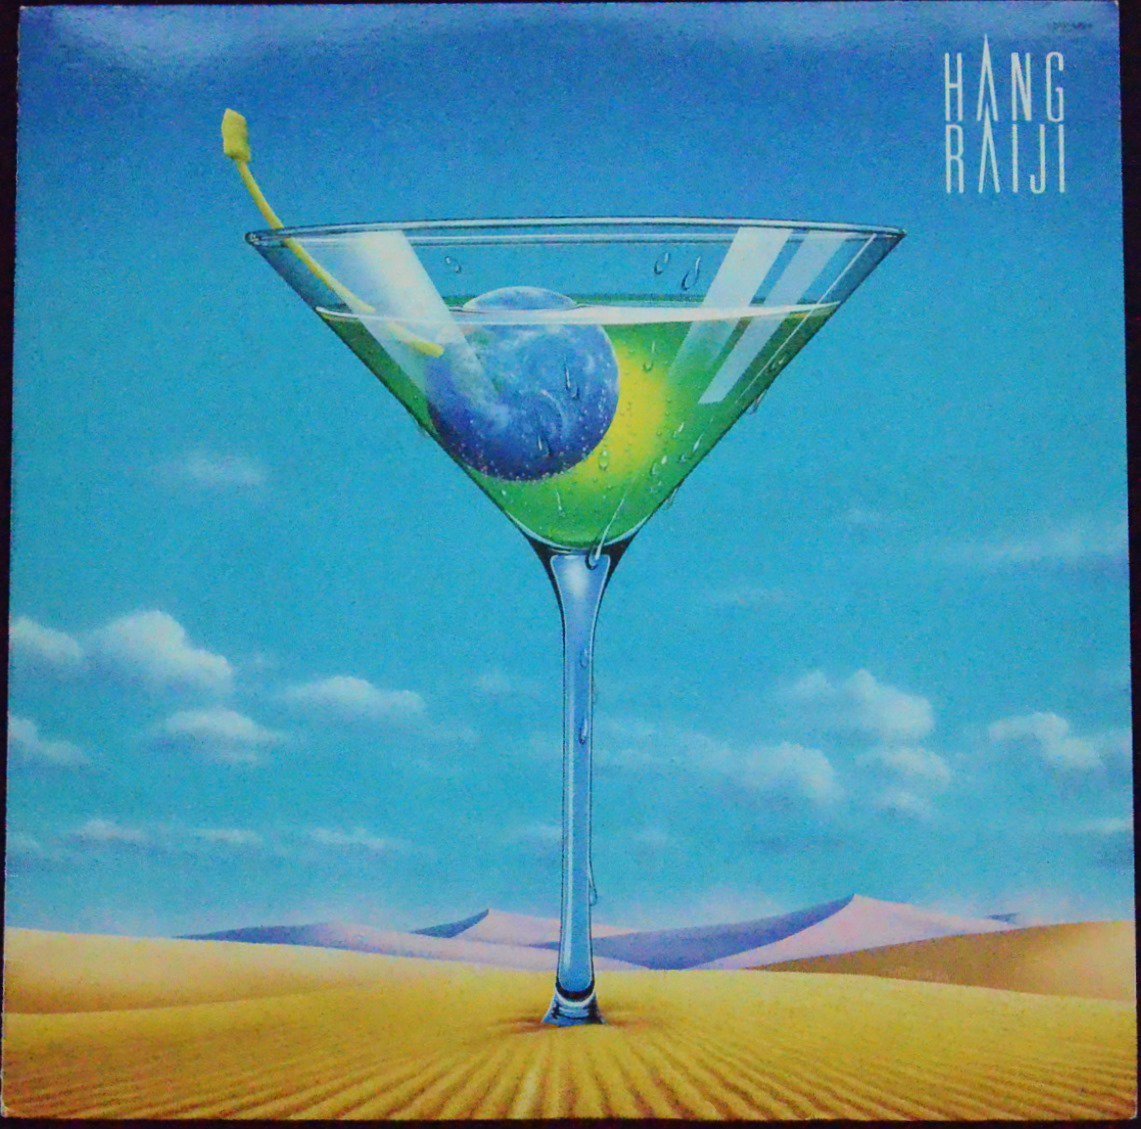 ハング・ライジ HANG RAIJI ‎/ HANG RAIJI (LP)